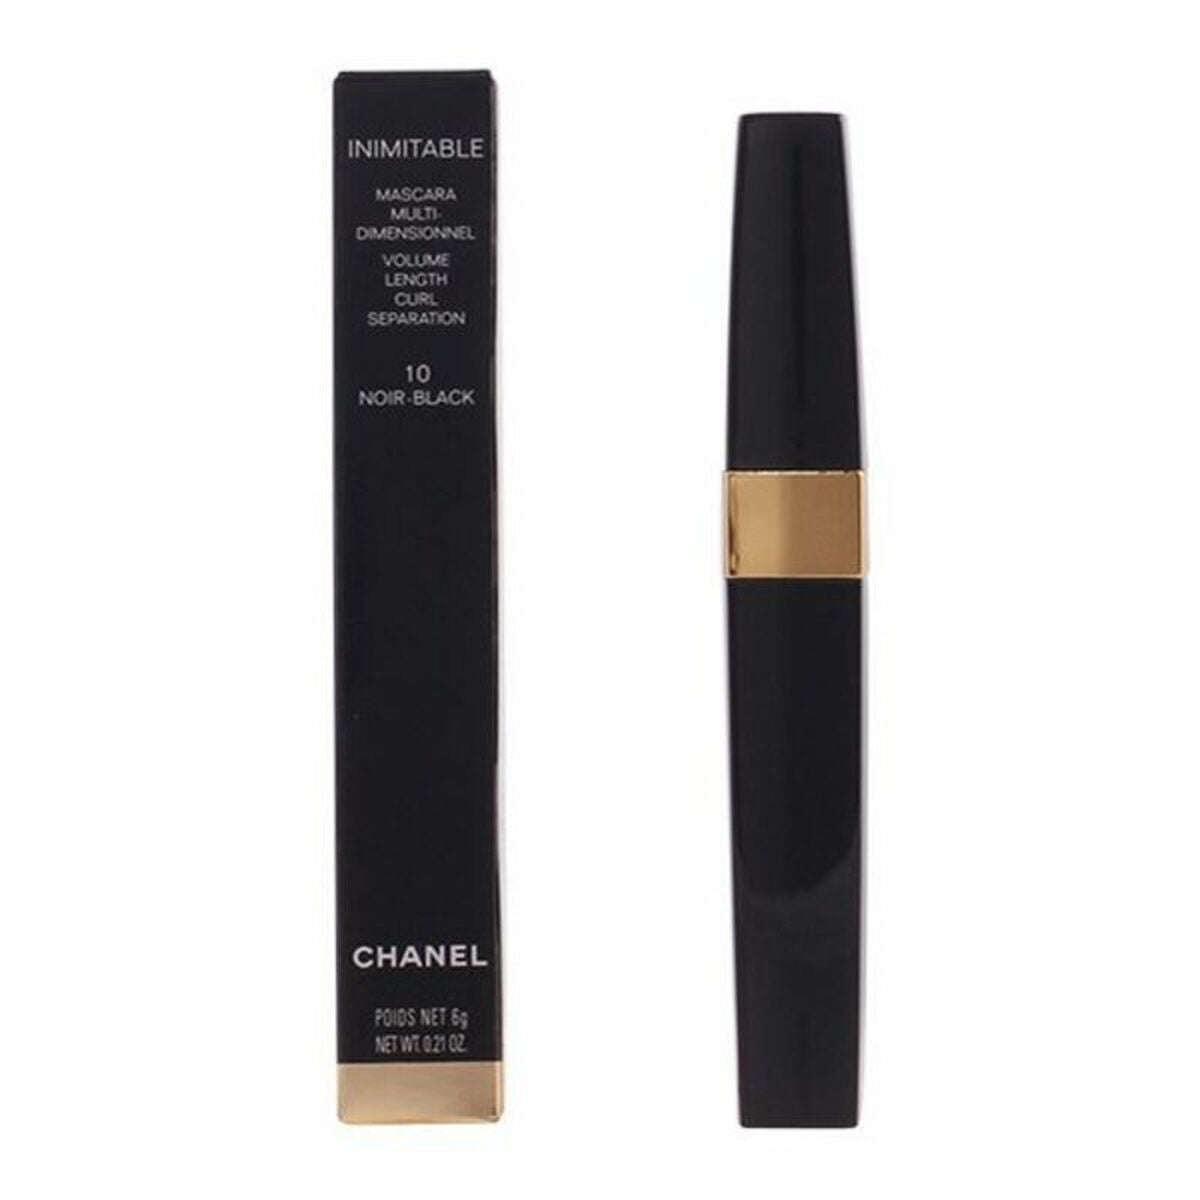 Mascara Inimitable Chanel 6 g-0